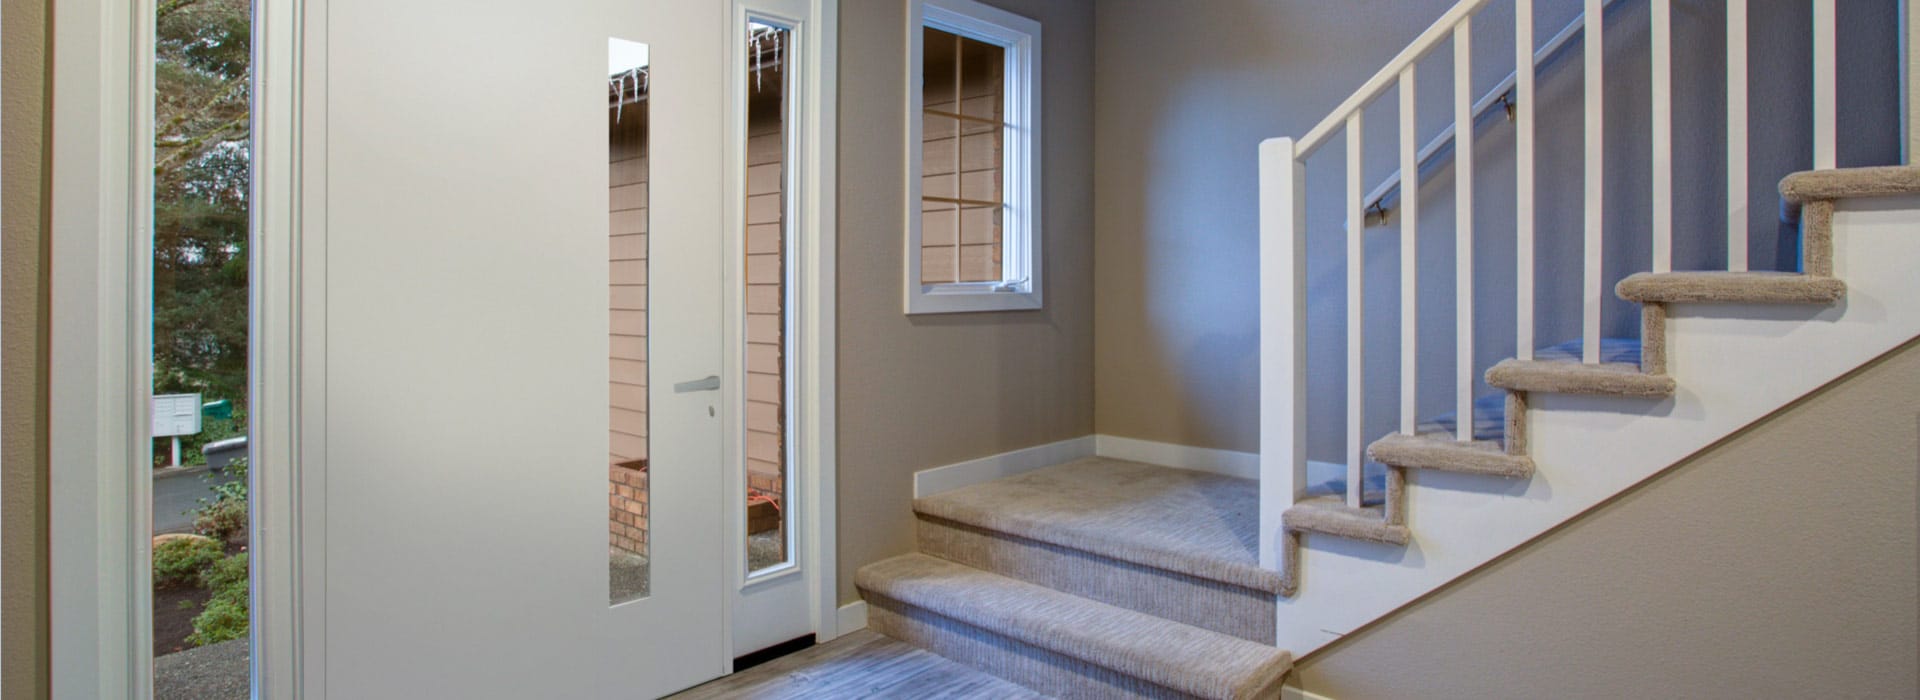 residential pivot door Glass Door System ts68